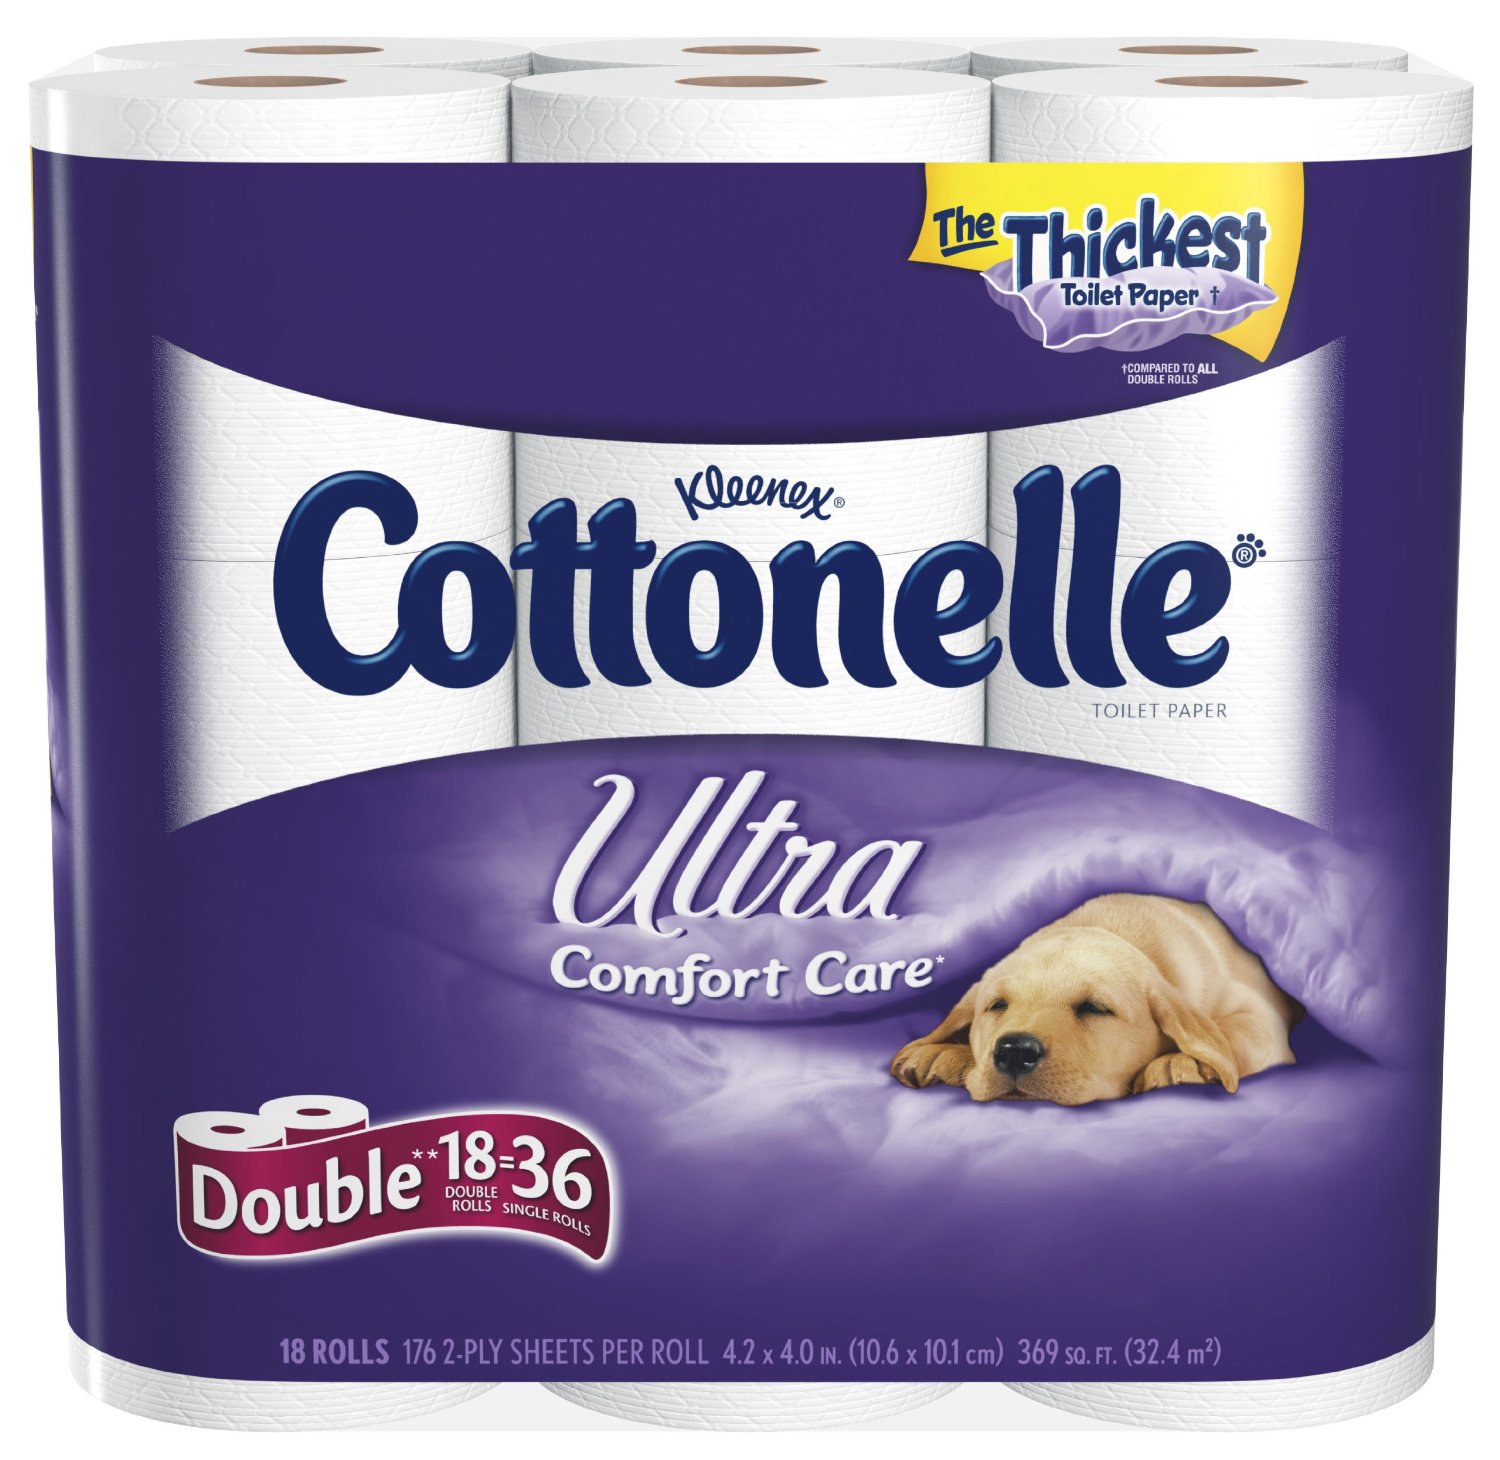 Rite Aid 2.99 Cottonelle Toilet Paper